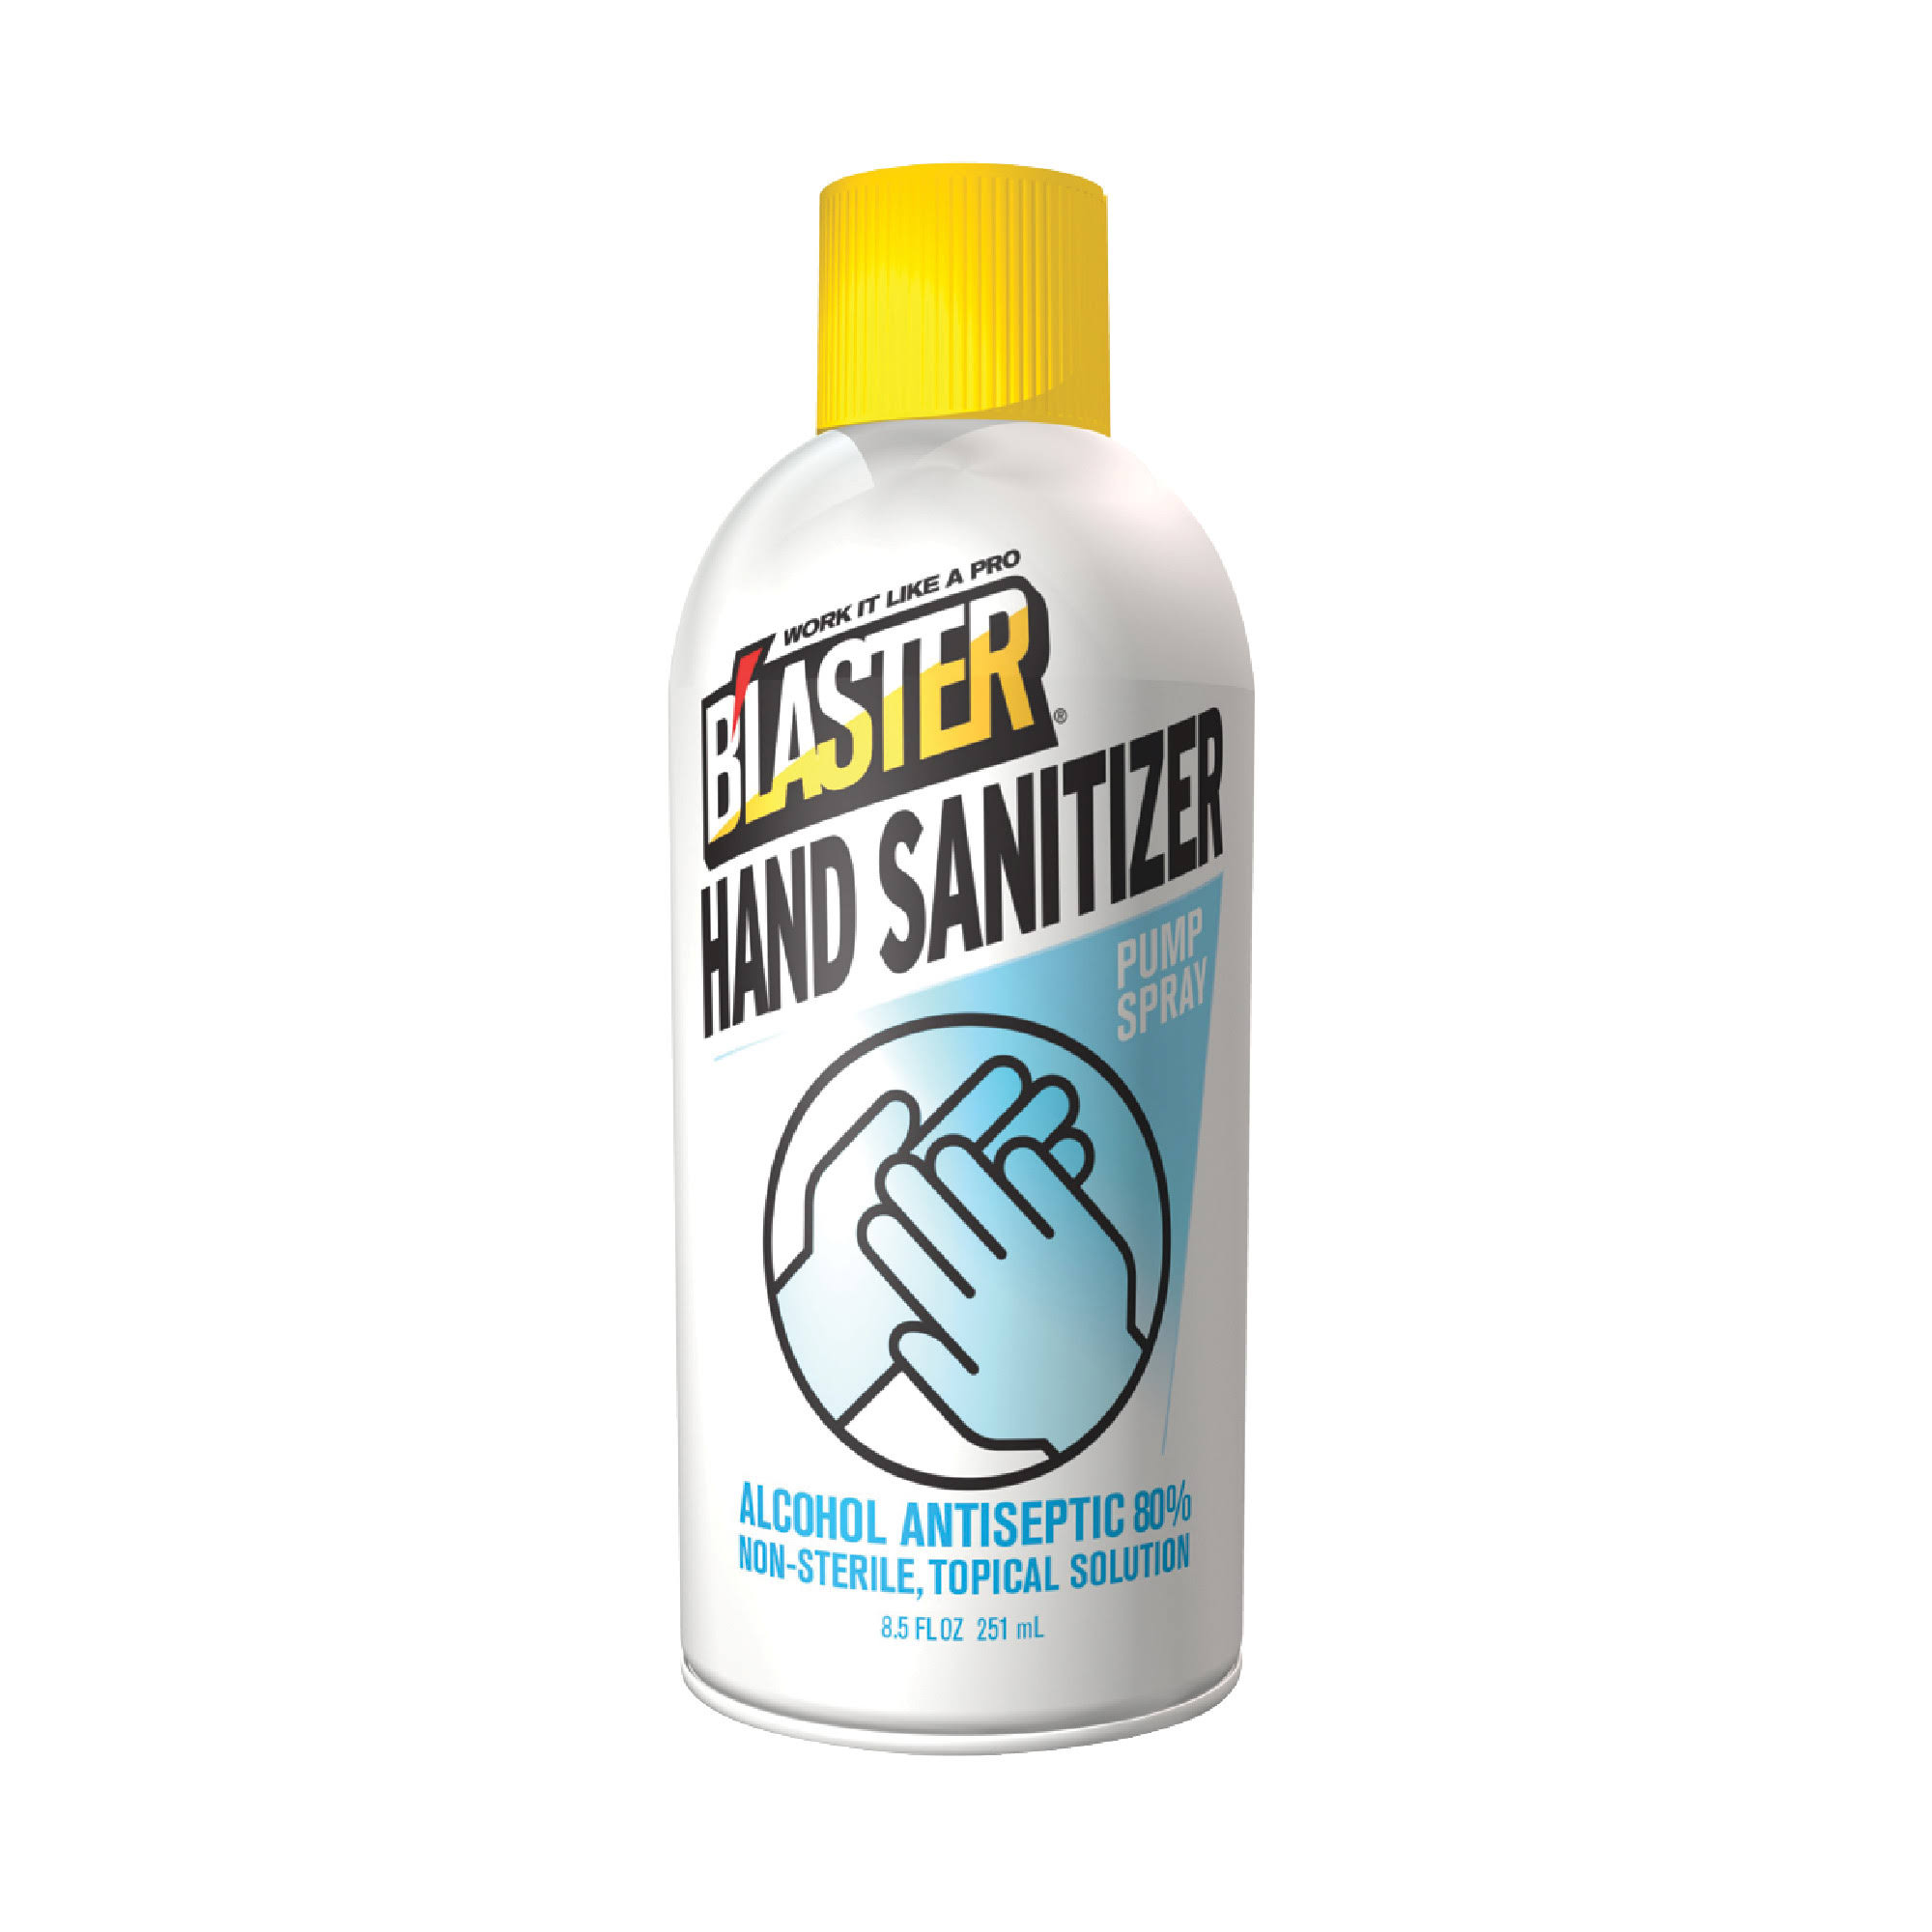 8.5oz. Pump Spray Hand Sanitizer